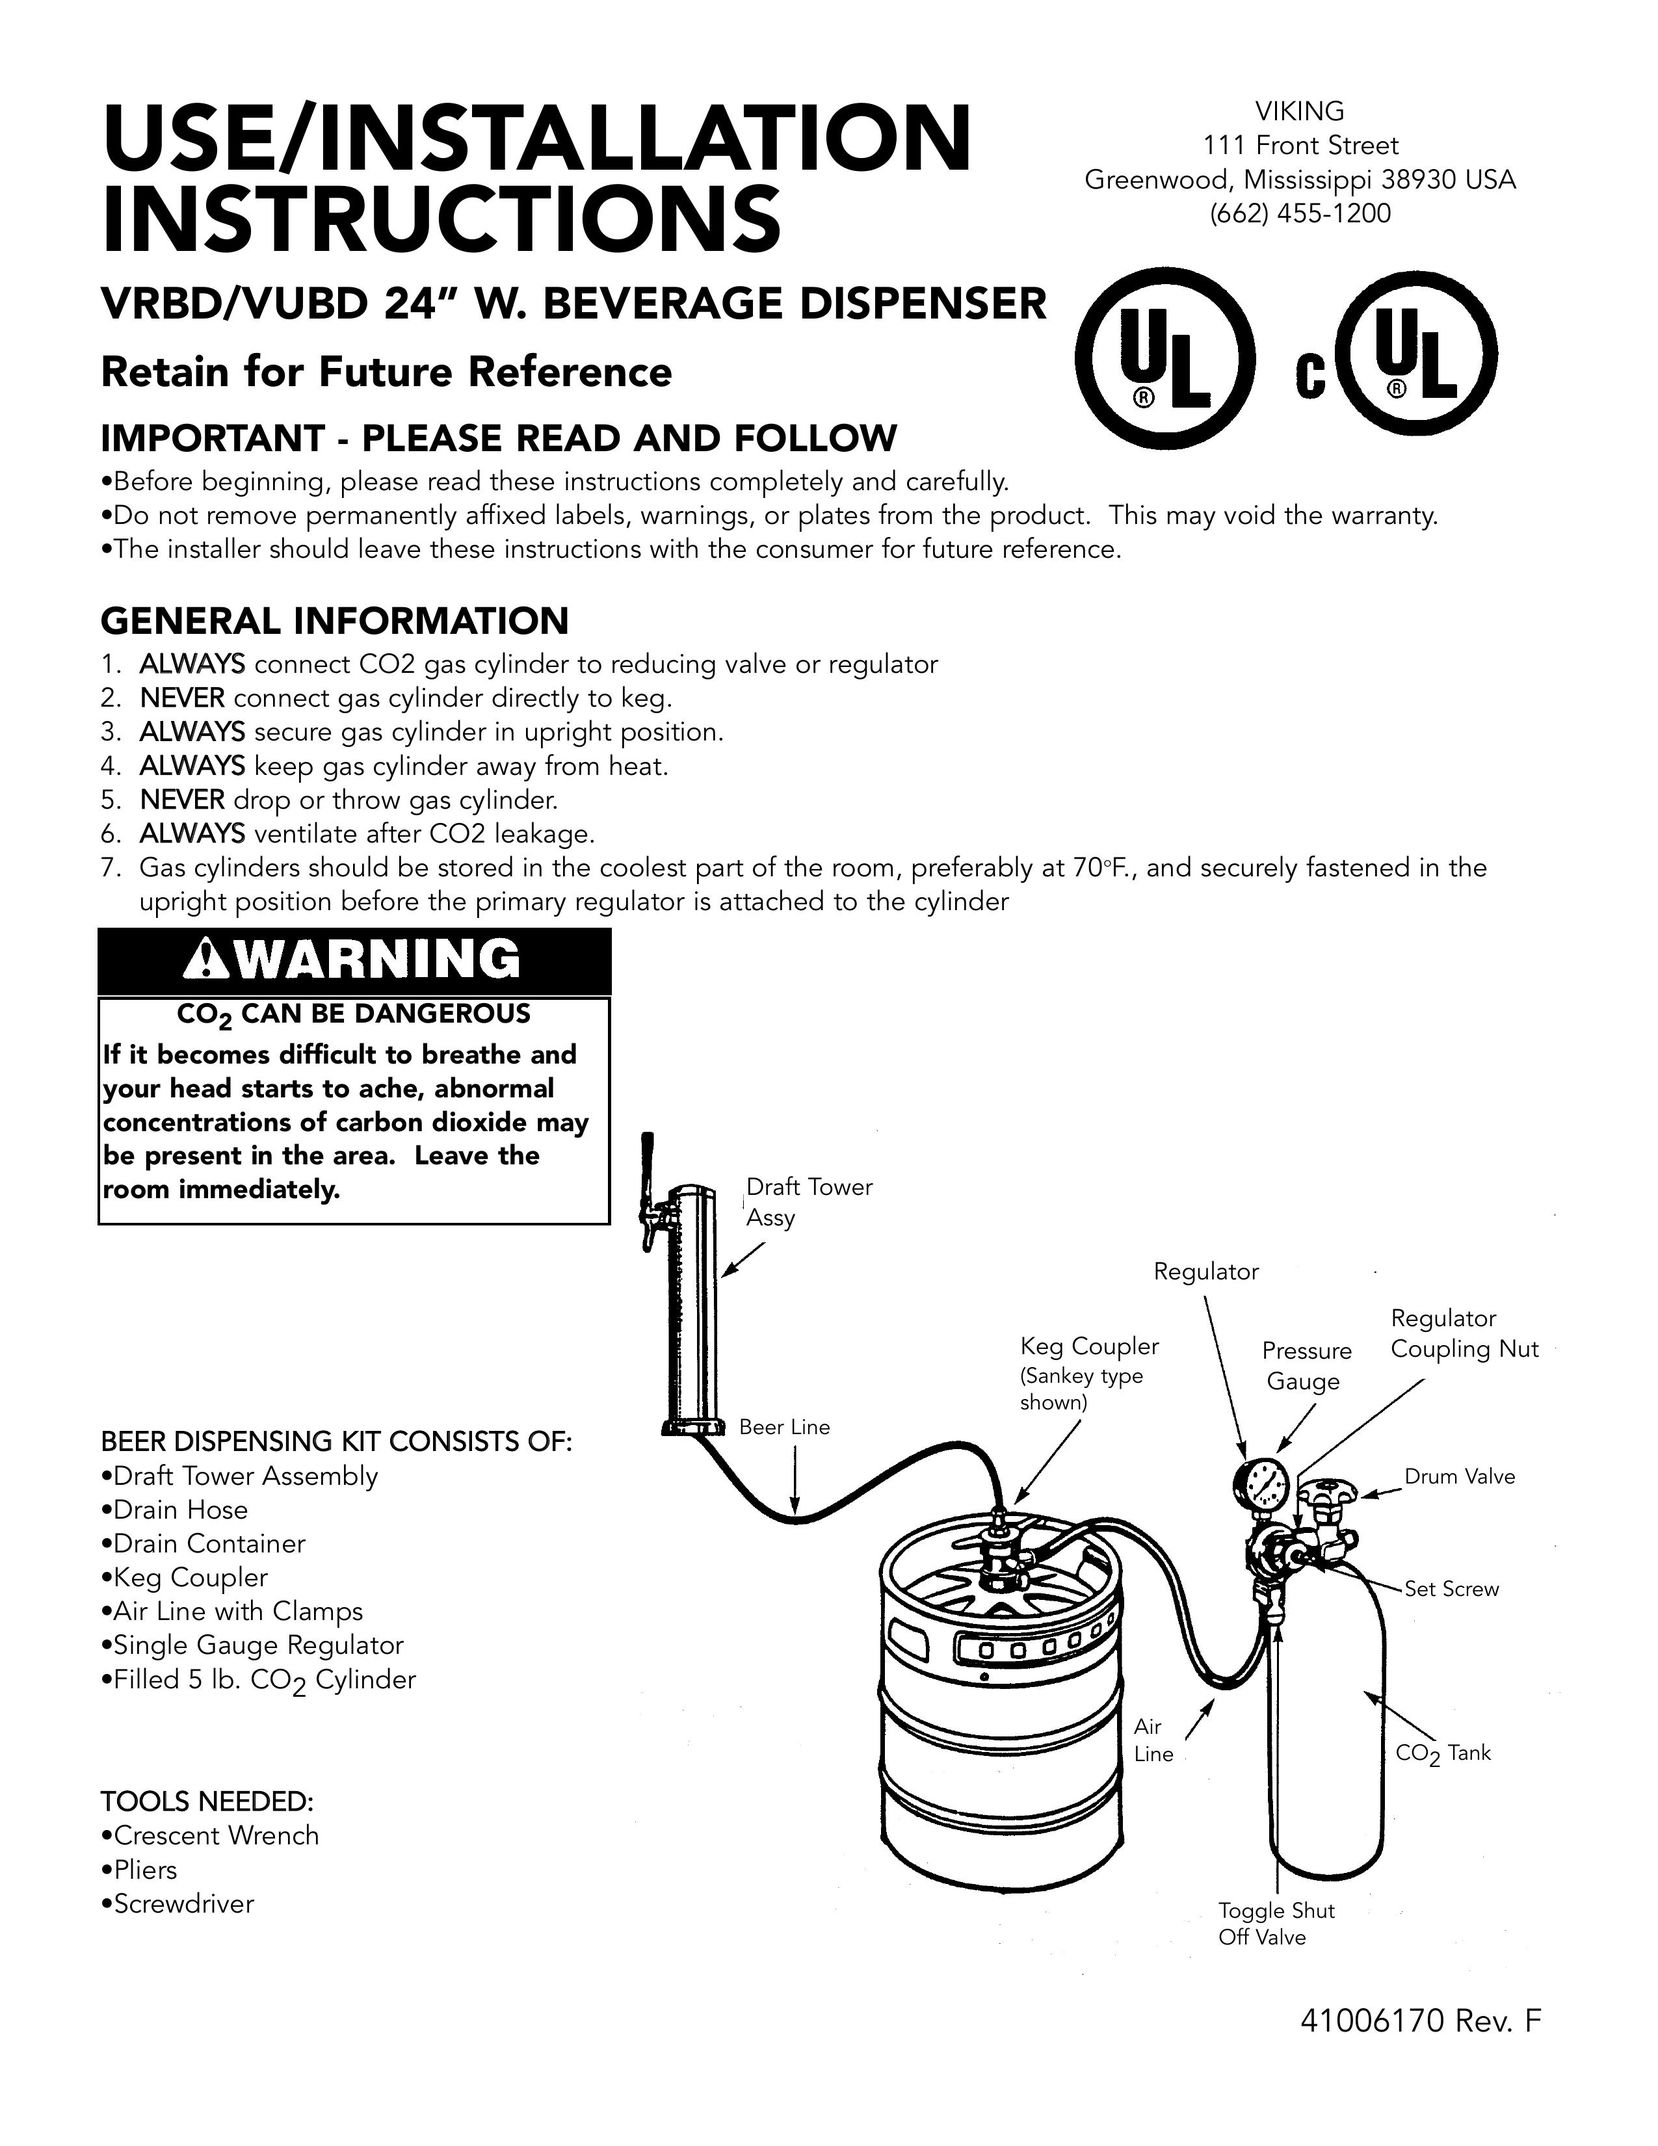 Viking VRBD/VUBD 24" W. BEVERAGE DISPENSER Beverage Dispenser User Manual